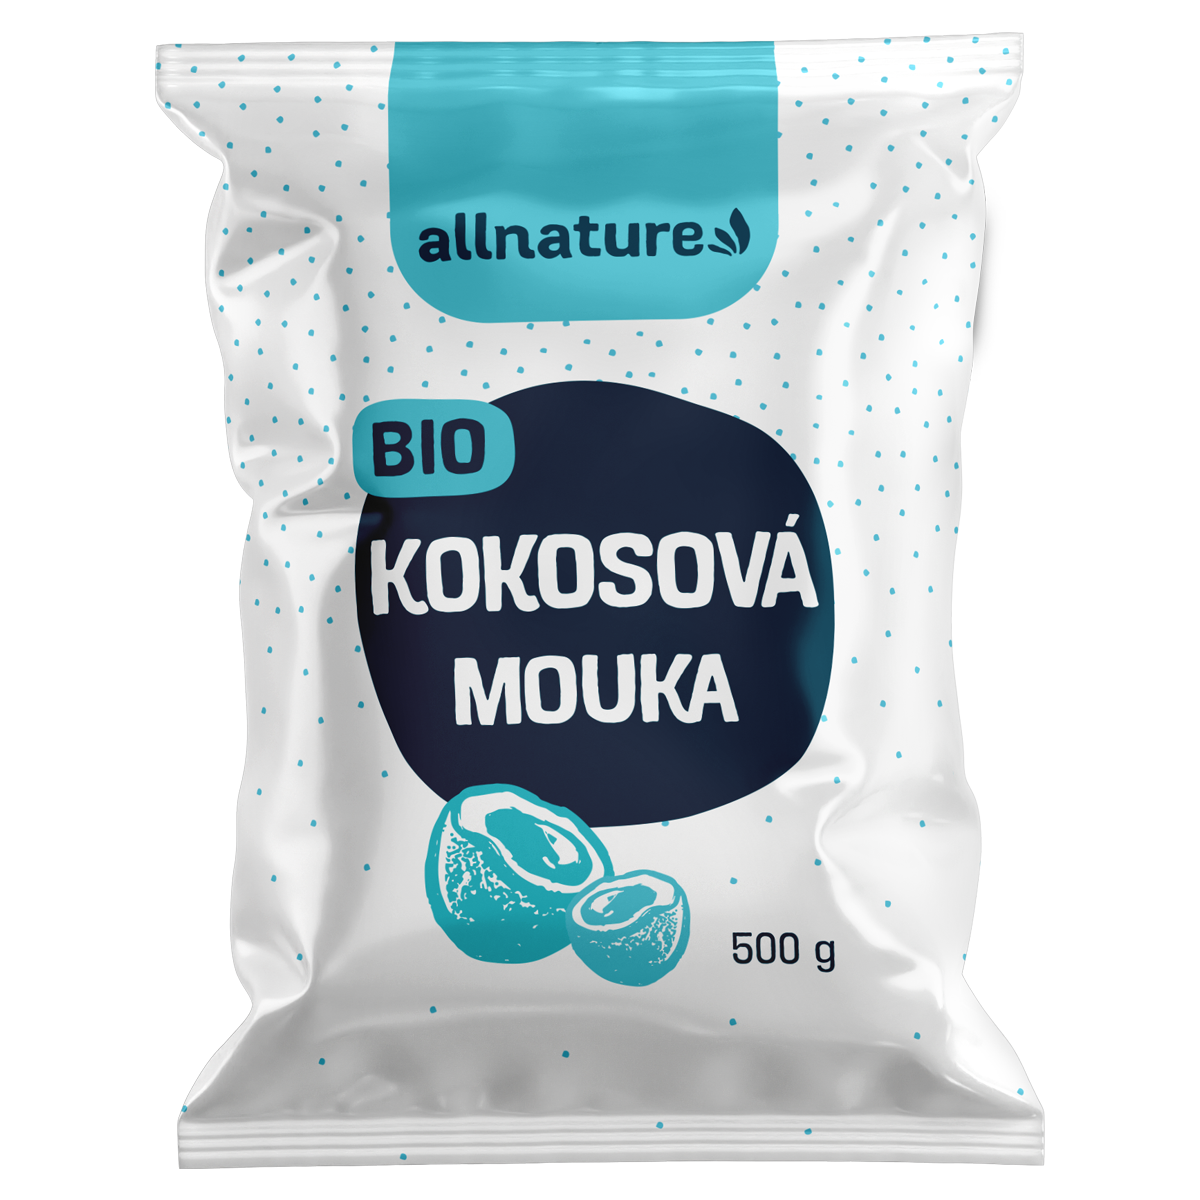 Allnature Kokosová mouka BIO - 500 g - bohatá na bílkoviny a vlákninu Allnature